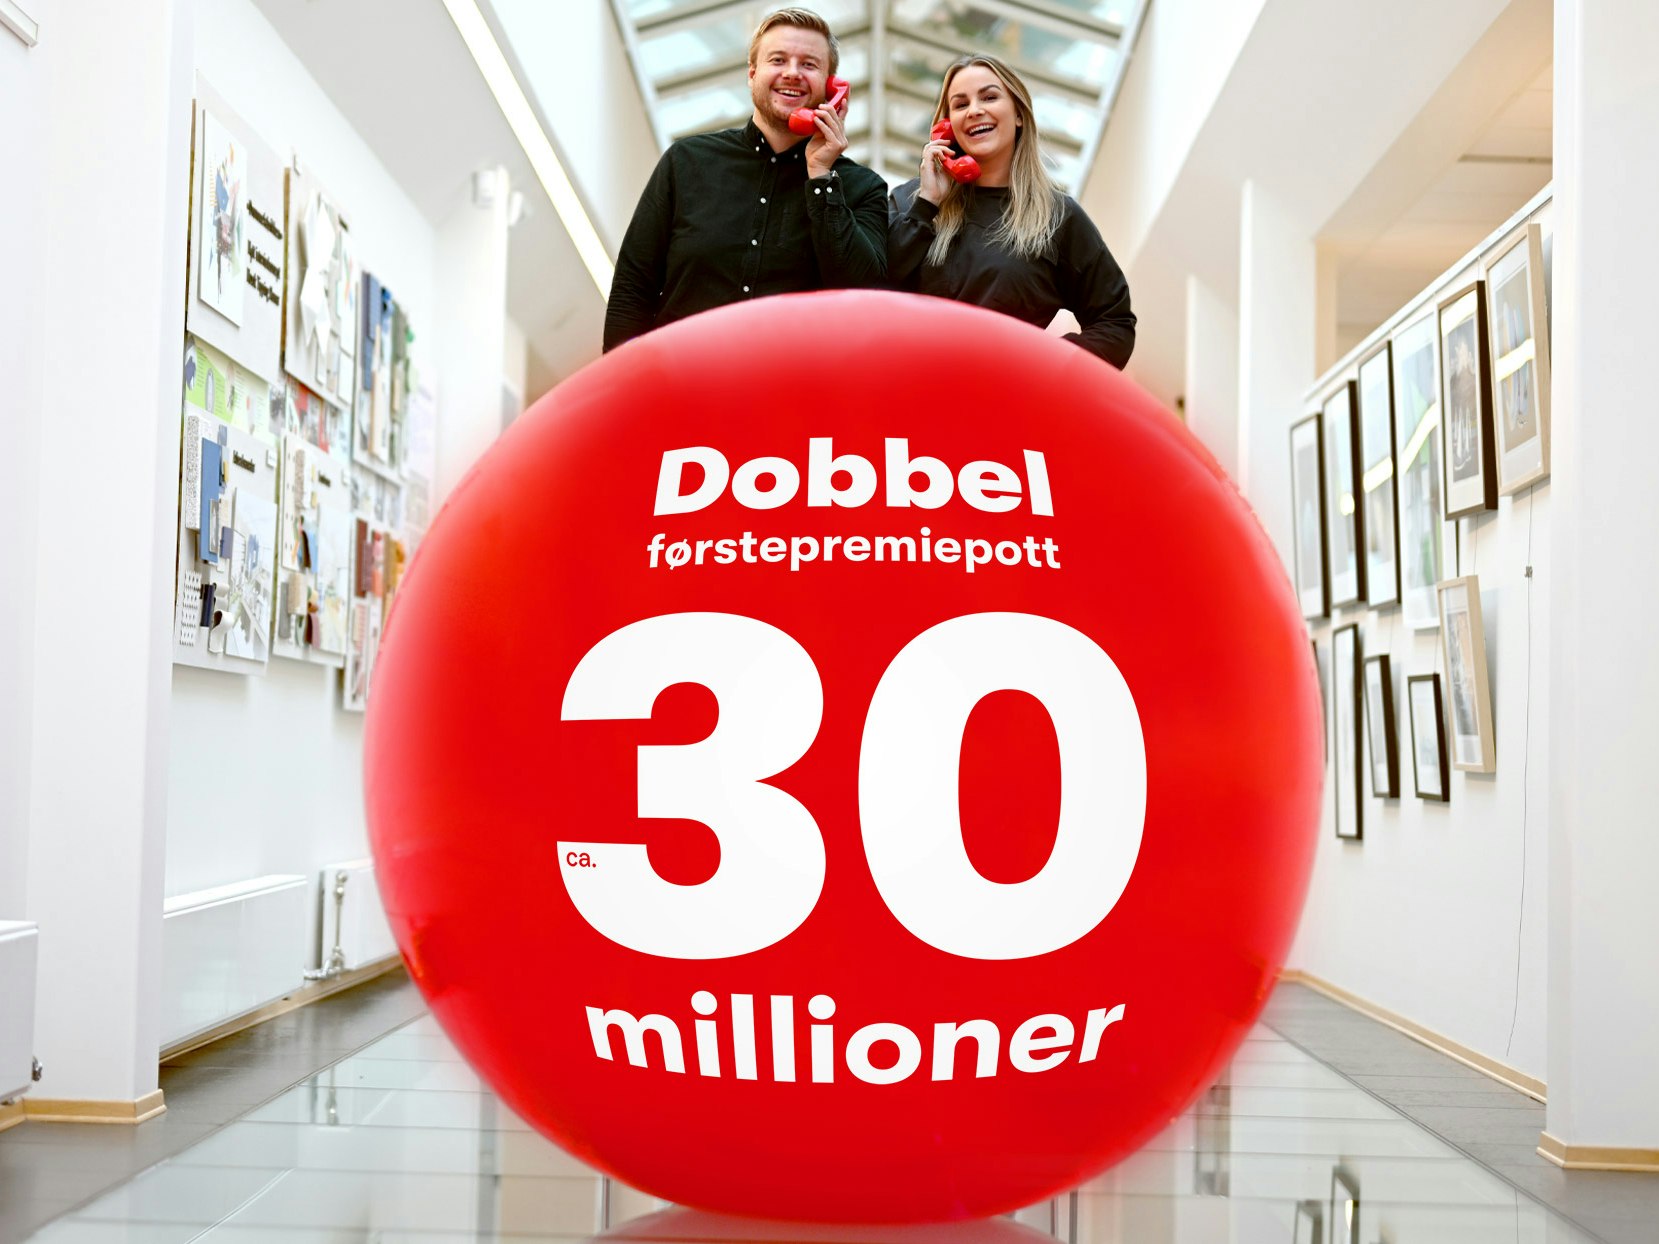 Trekningsredaktørene Lars Hulleberg og Pie Skagsoset Norseng står bak en stor rød ball med Lotto-tekst og holder hvert sitt røde telefonrør.